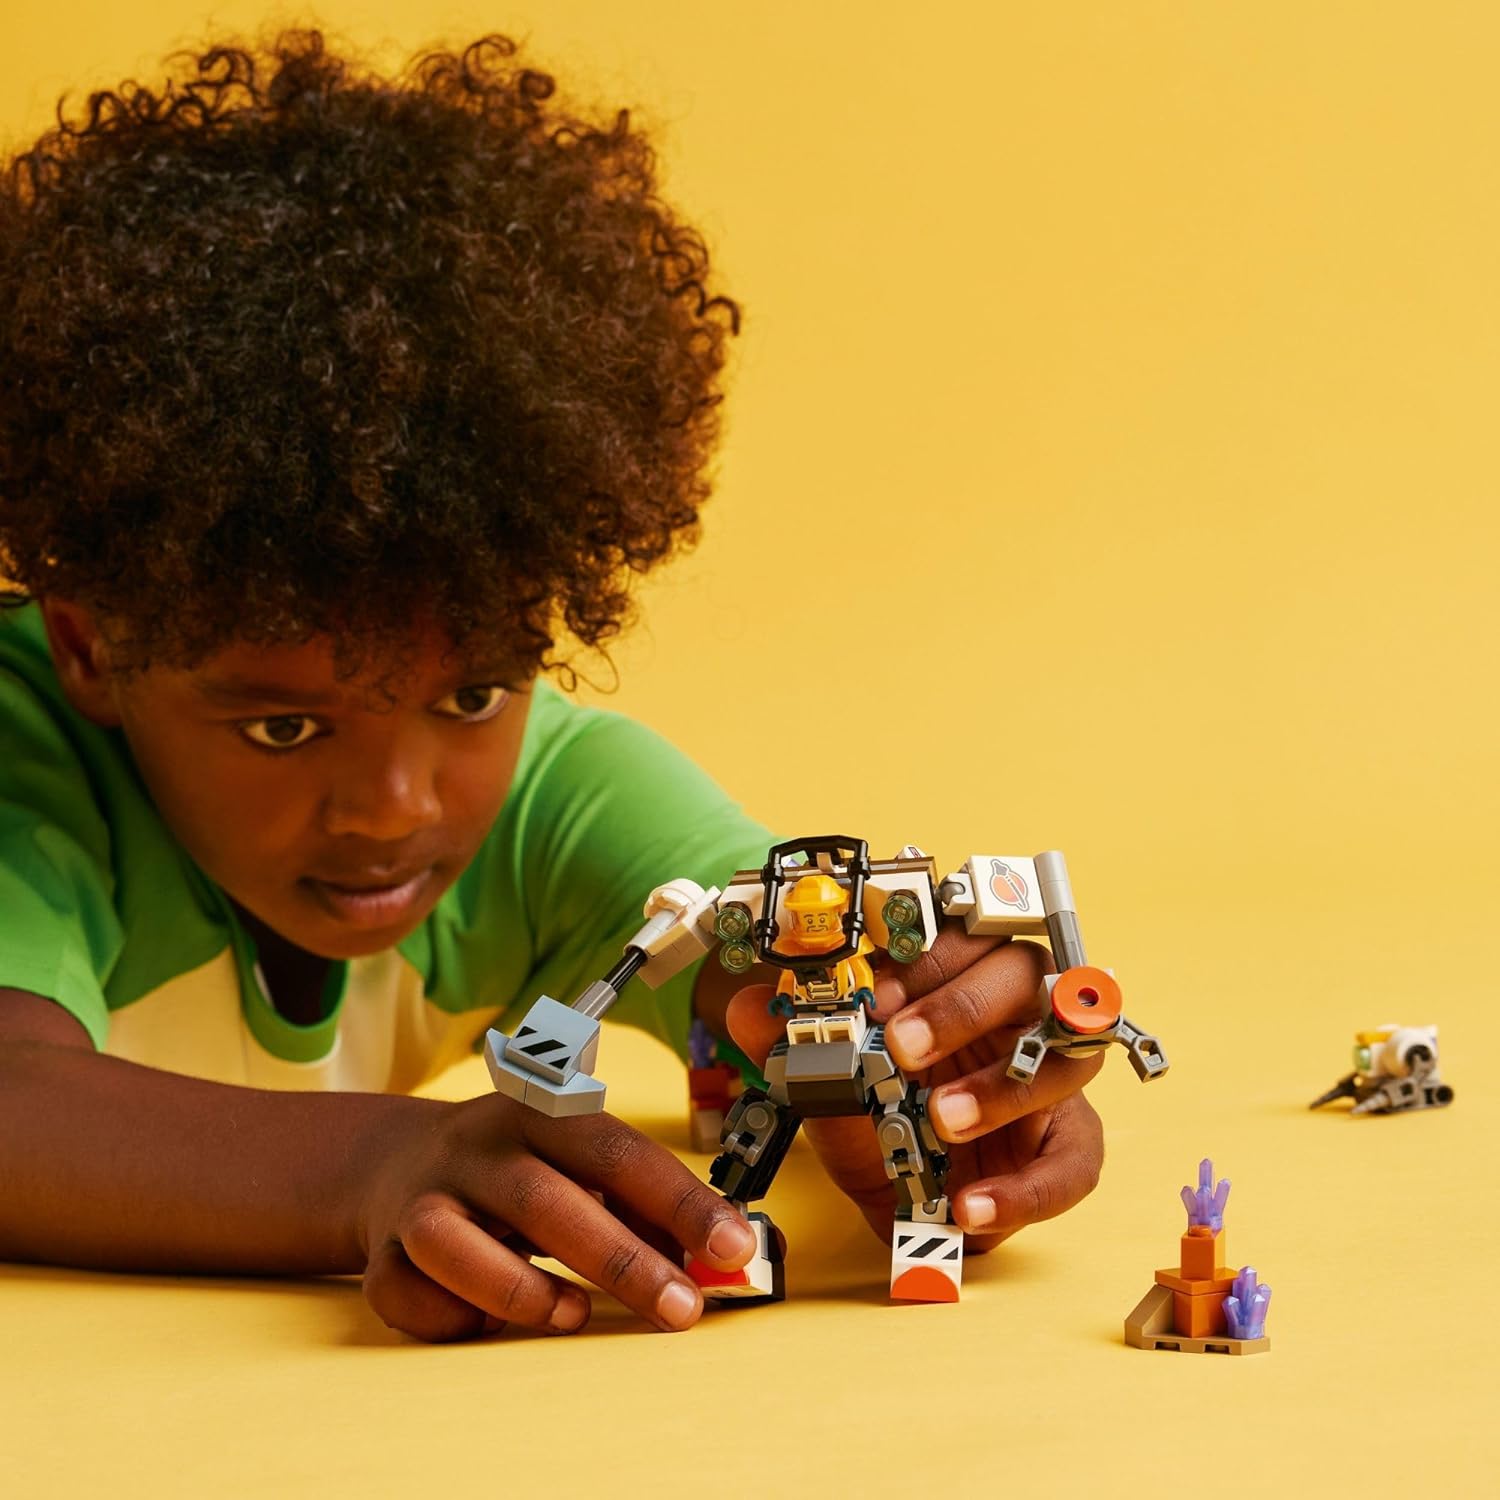 مجموعة بناء البدلة الميكانيكية لبناء مدينة الفضاء من ليجو 60428، لعبة فضاء ممتعة للأطفال من سن 6 سنوات فما فوق، فكرة هدية فضائية للأولاد والبنات الذين يحبون اللعب الخيالي، تتضمن شخصية طيار صغيرة ولعبة روبوت.